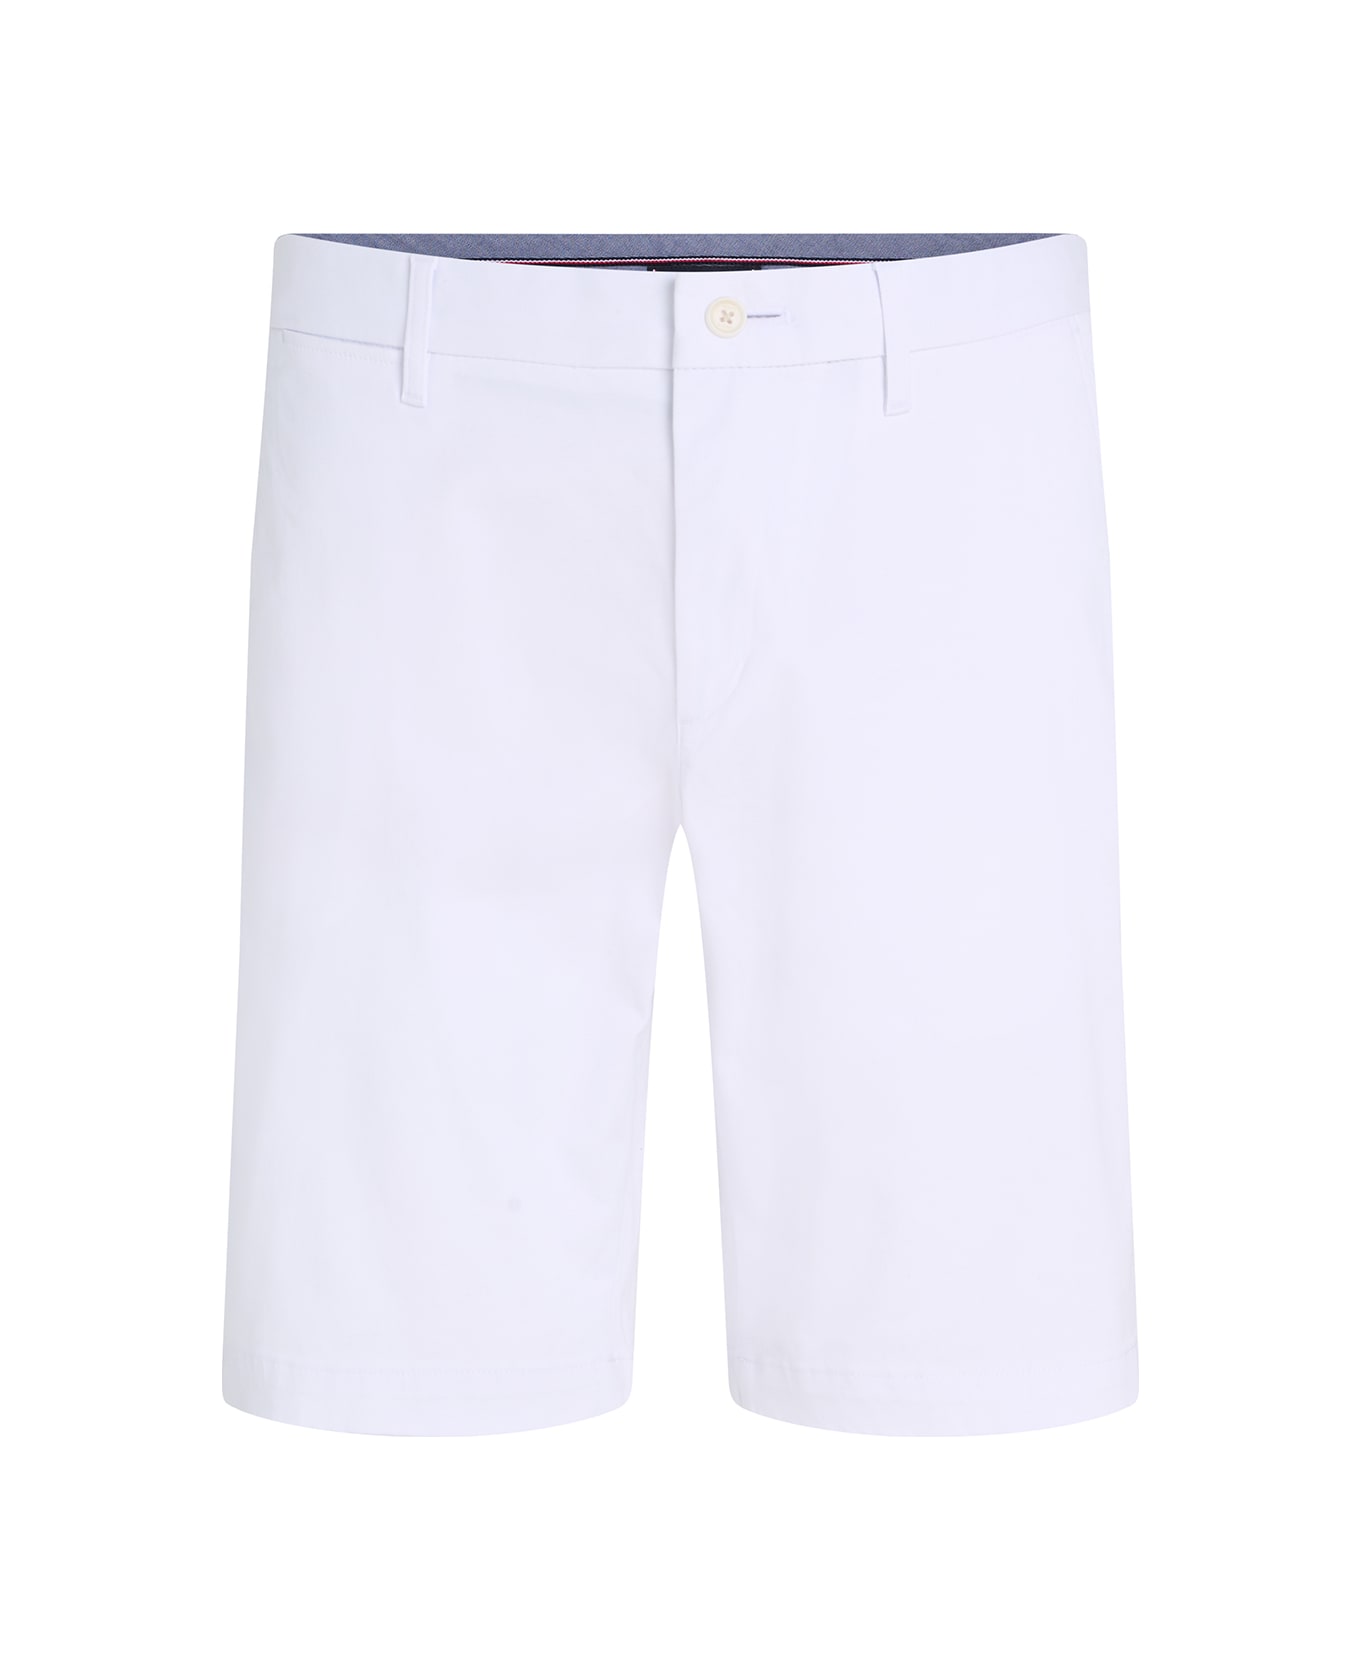 Tommy Hilfiger Men's Optical White Bermuda Shorts - OPTIC WHITE ショートパンツ